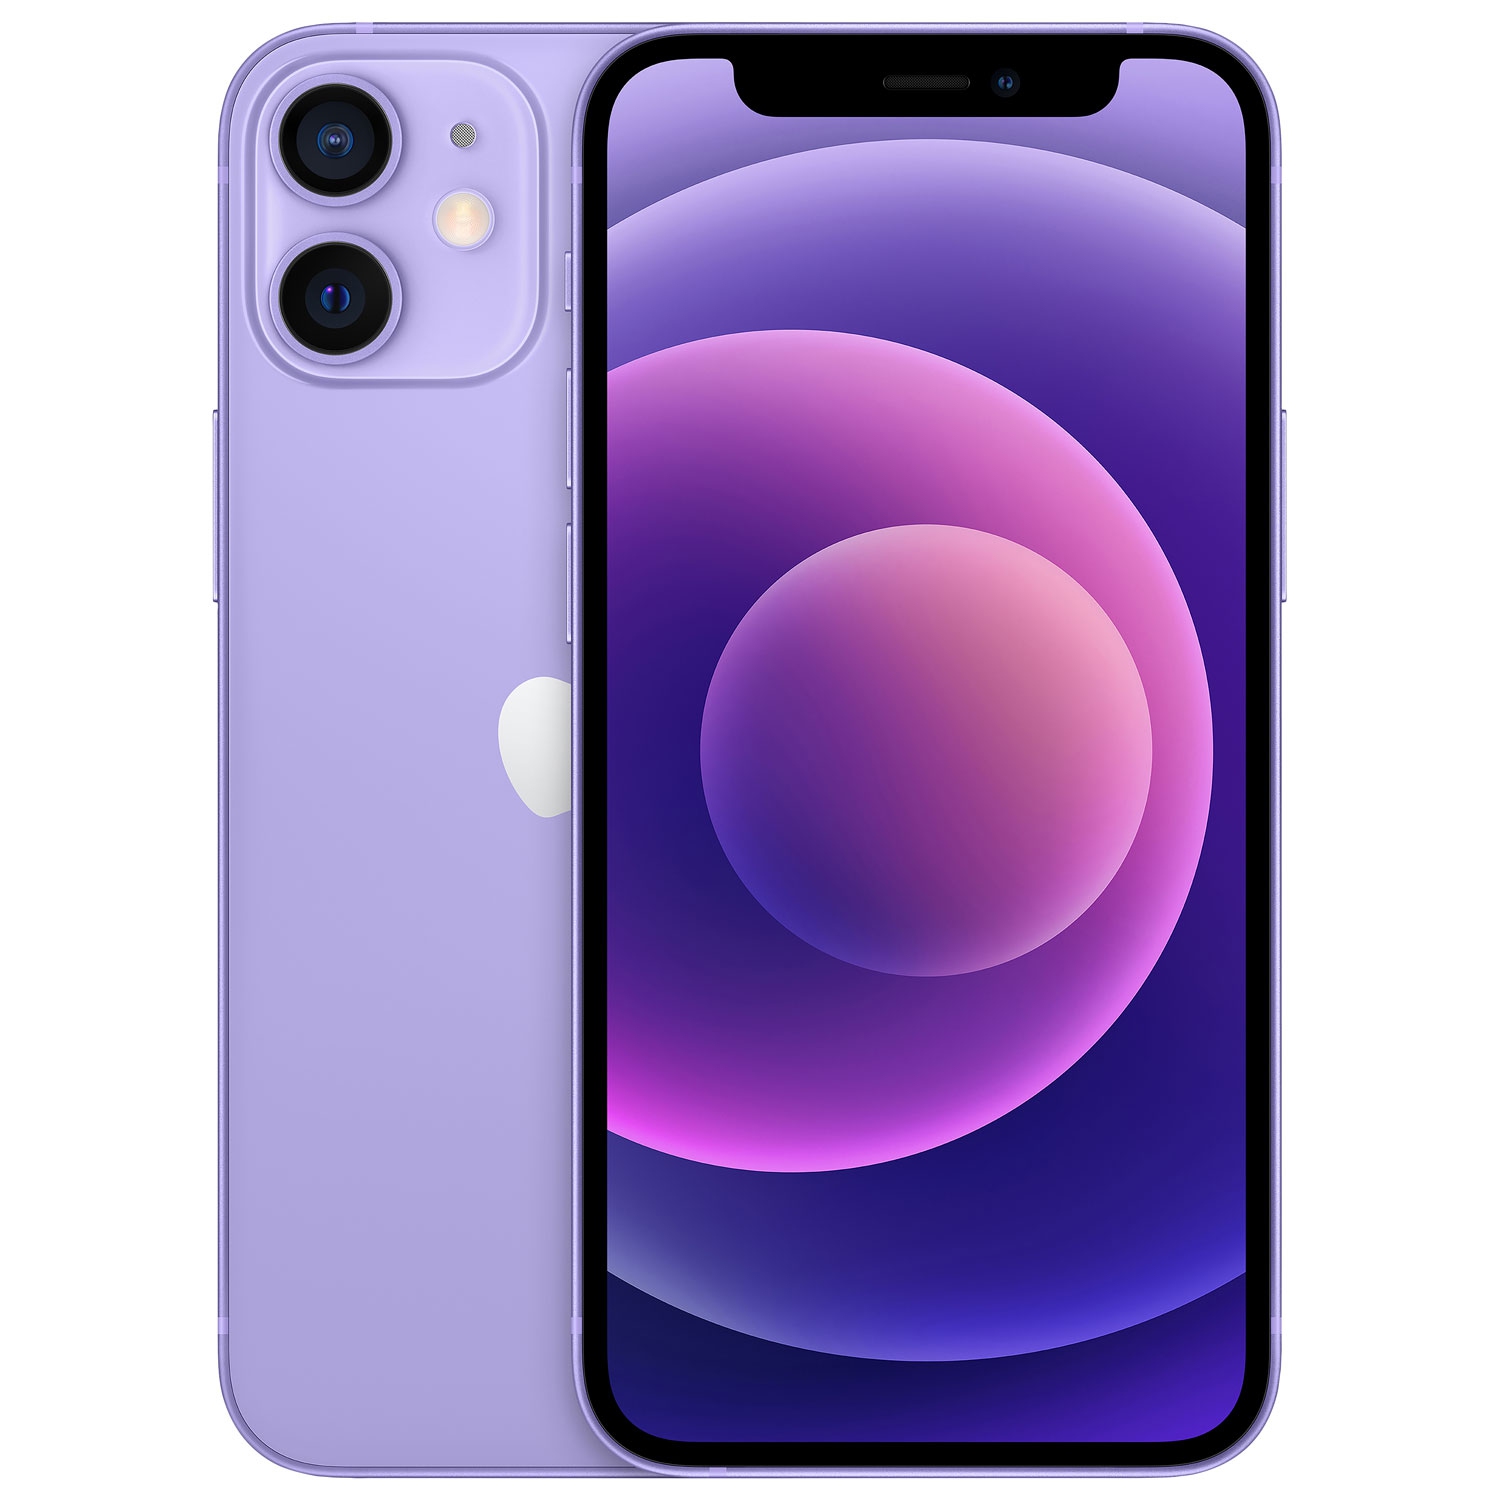 Refurbished (Good) - Apple iPhone 12 mini 256GB - Purple -Unlocked